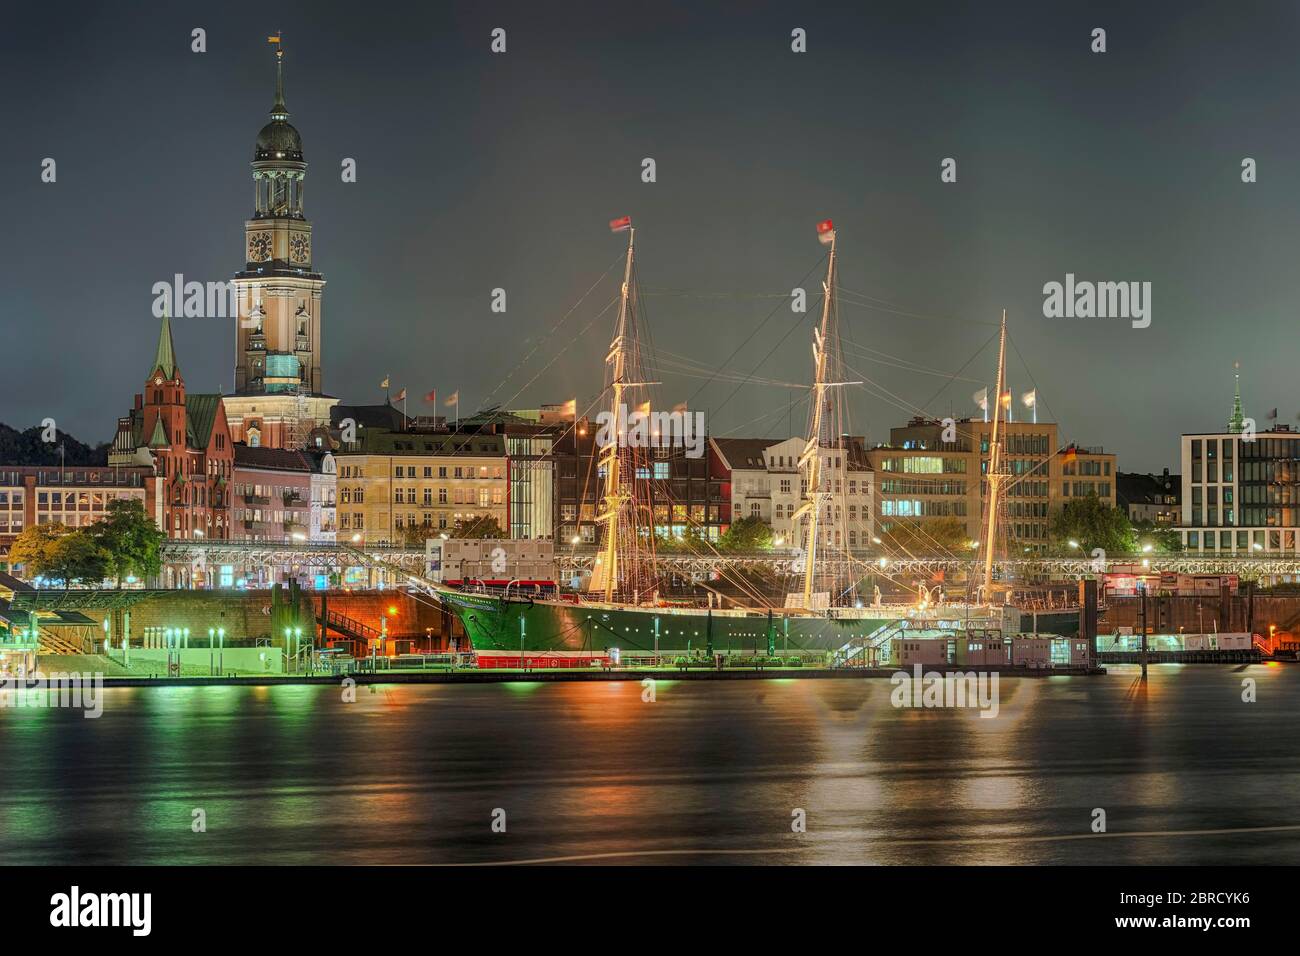 Landeplatz mit hohen Schiffen, beleuchtet, Turm des Hamburger Michel, Hamburger Hafen, Hamburg, Deutschland Stockfoto